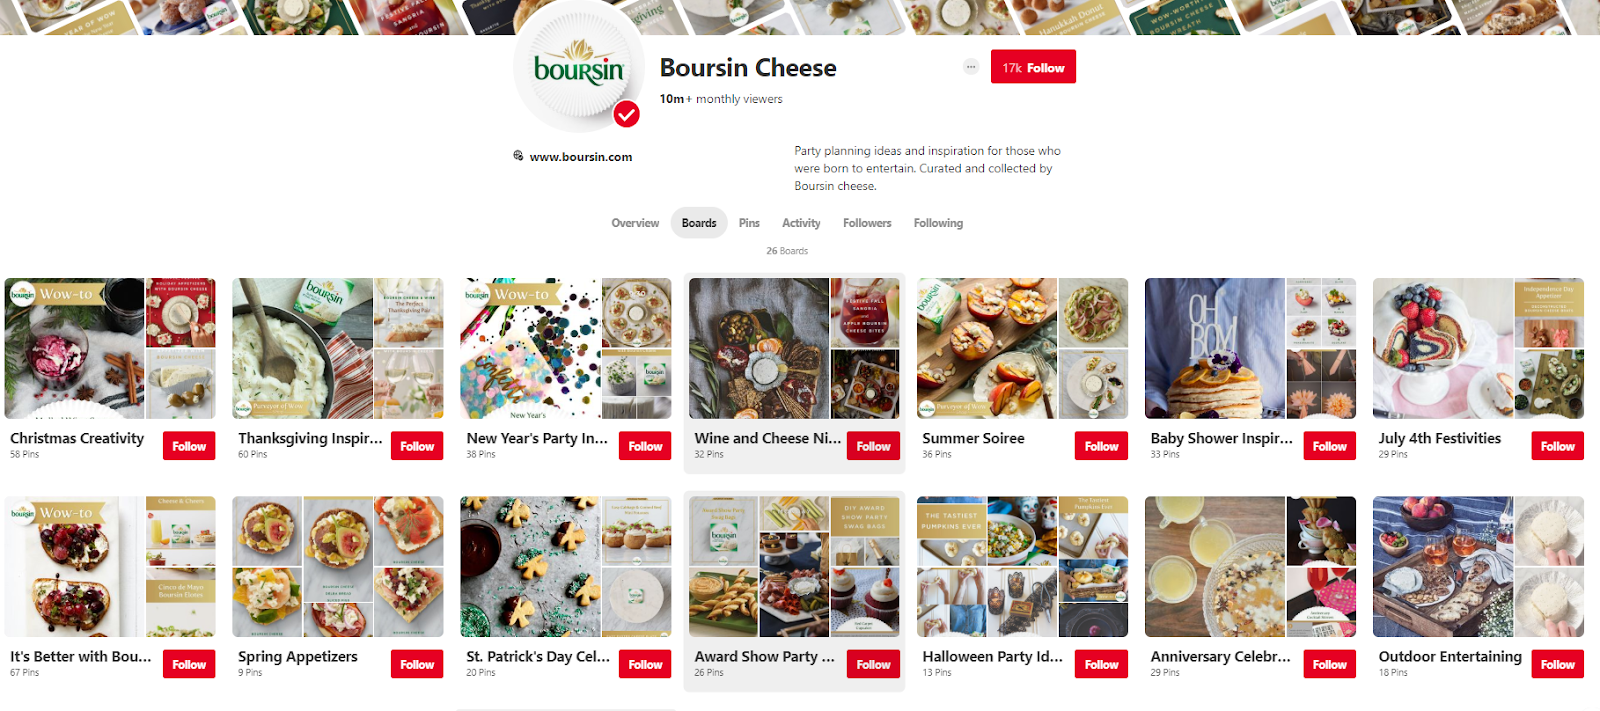 boursin-cheese-boards